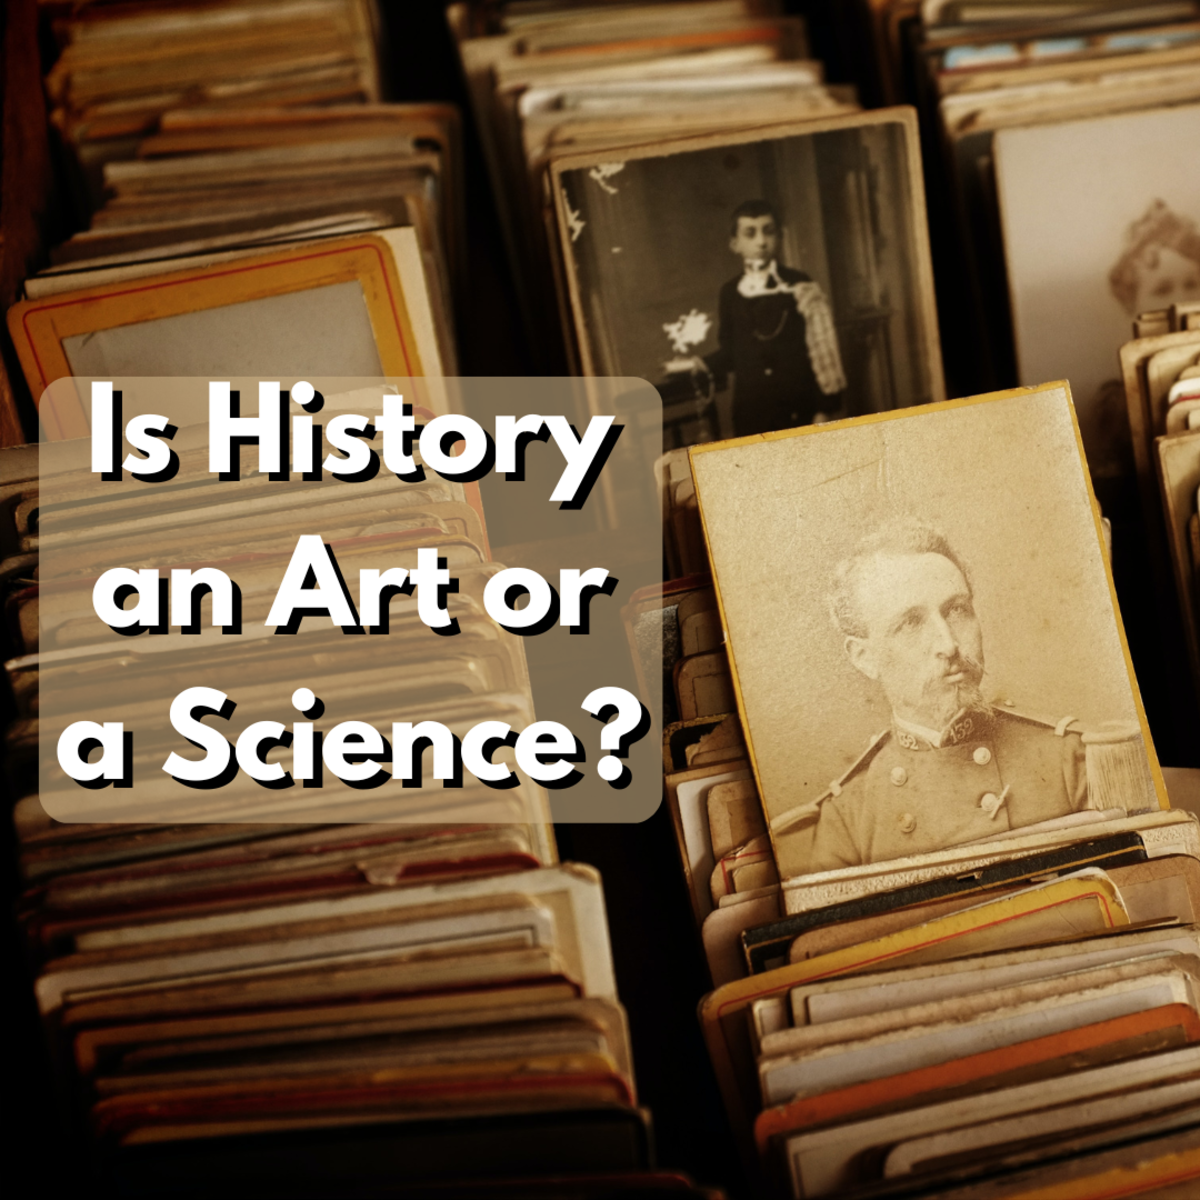 继续读下去，了解历史研究和分析的过程，以及在历史学科中艺术和科学的边界在哪里汇合。